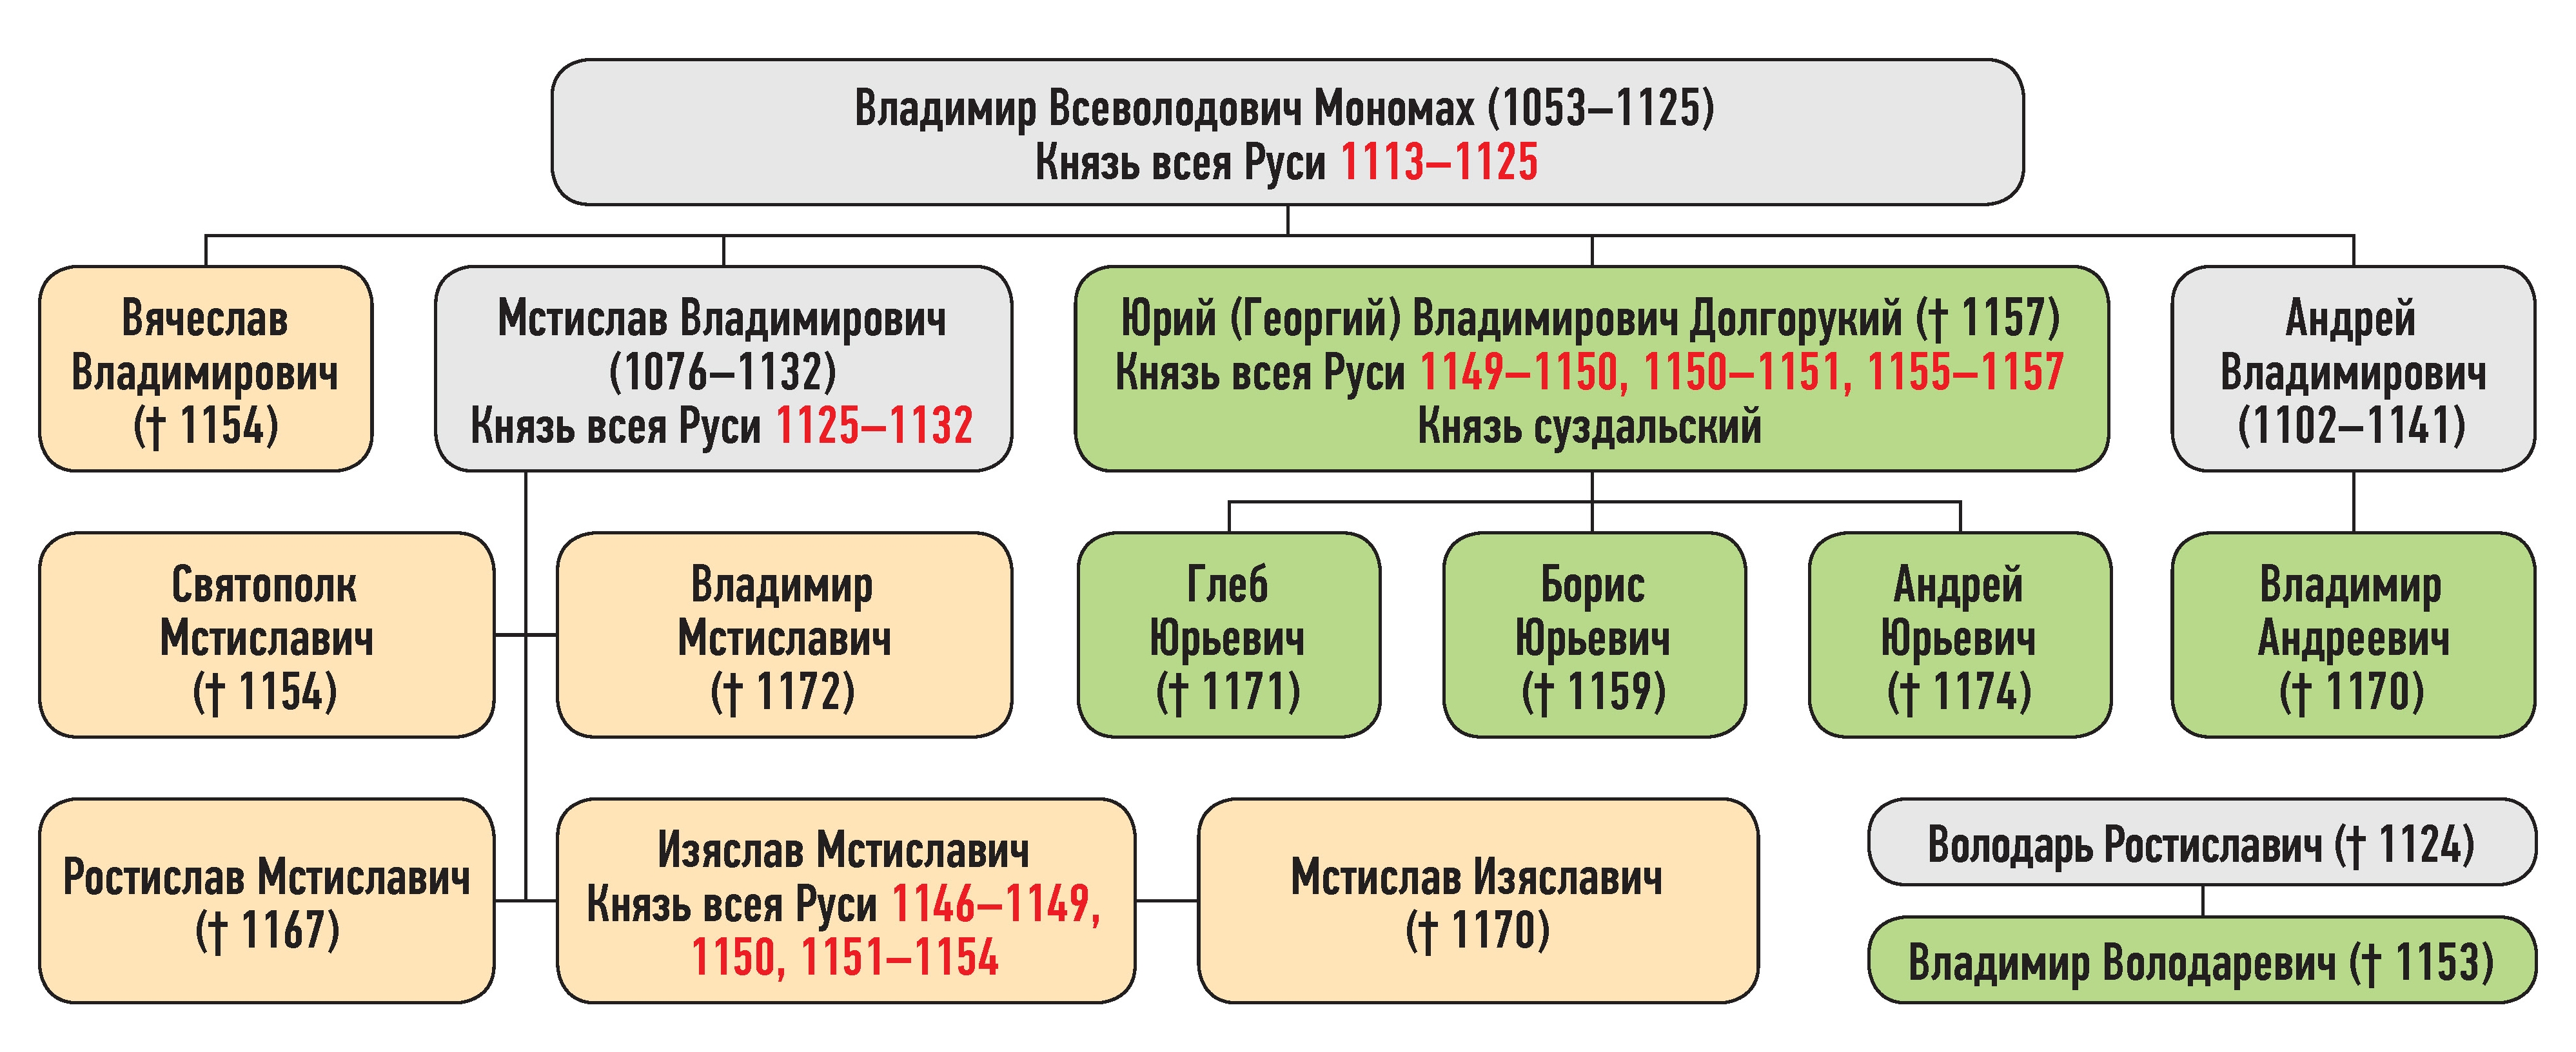 Генеалогическая схема к продолжению усобицы Изяслава Мстиславича и Юрия Владимировича зимой 1150 г